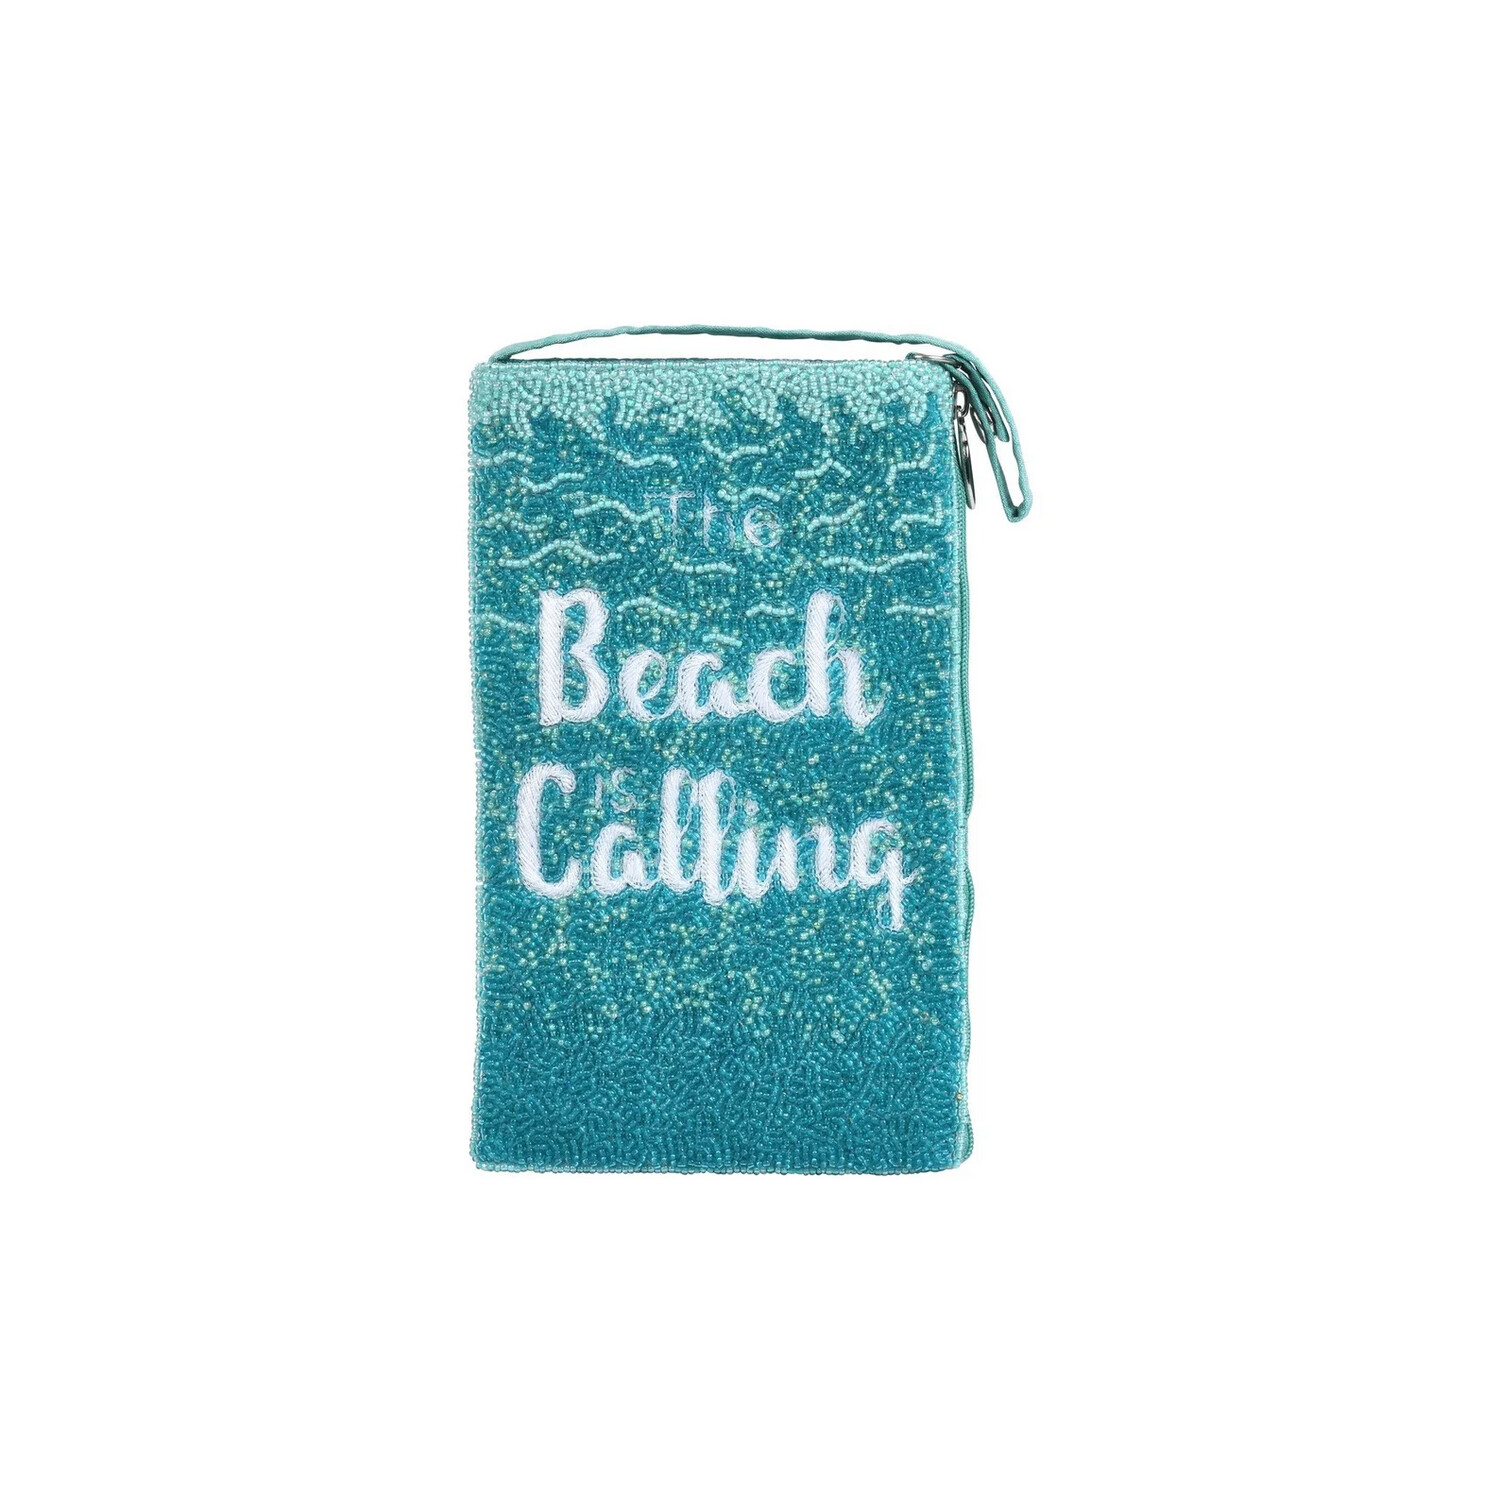 The Beach is Calling Club Bag